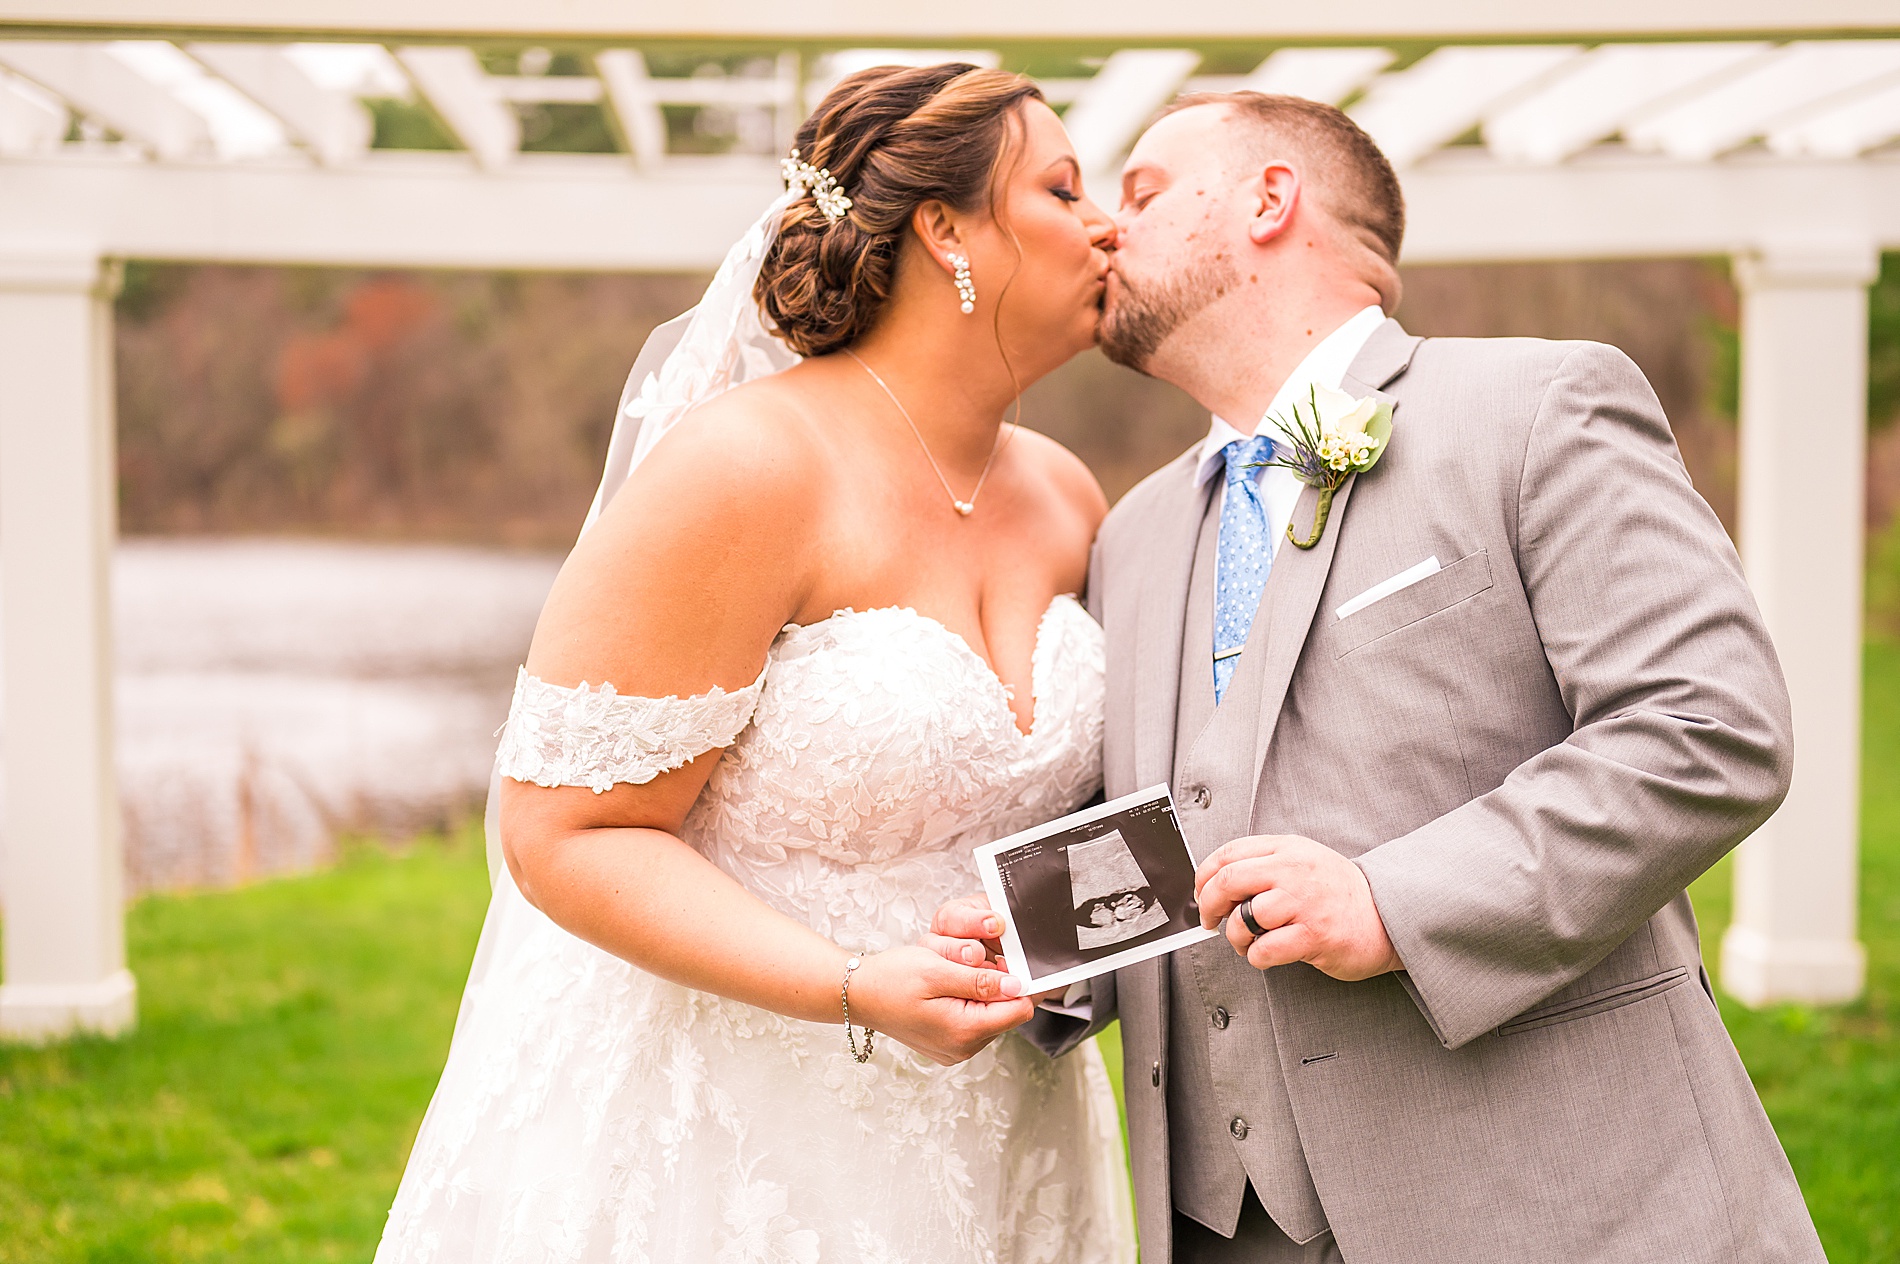 newlyweds hold up ultrasound photo during wedding portraits 